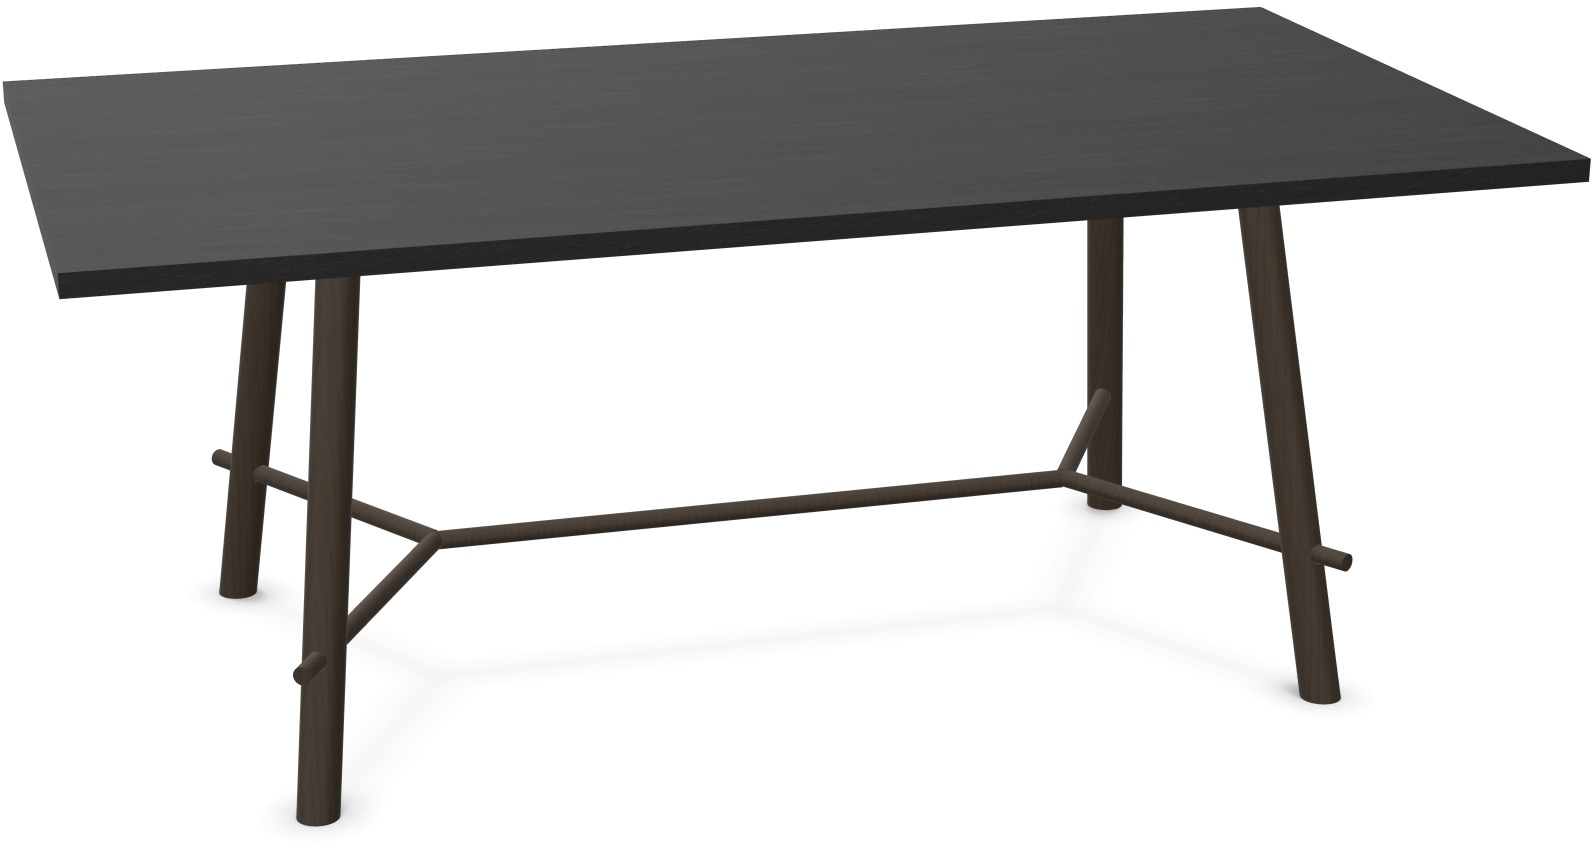 Record Living Maxi Tisch in Eiche schwarz / Eiche schwarz präsentiert im Onlineshop von KAQTU Design AG. Esstisch ist von Infiniti Design